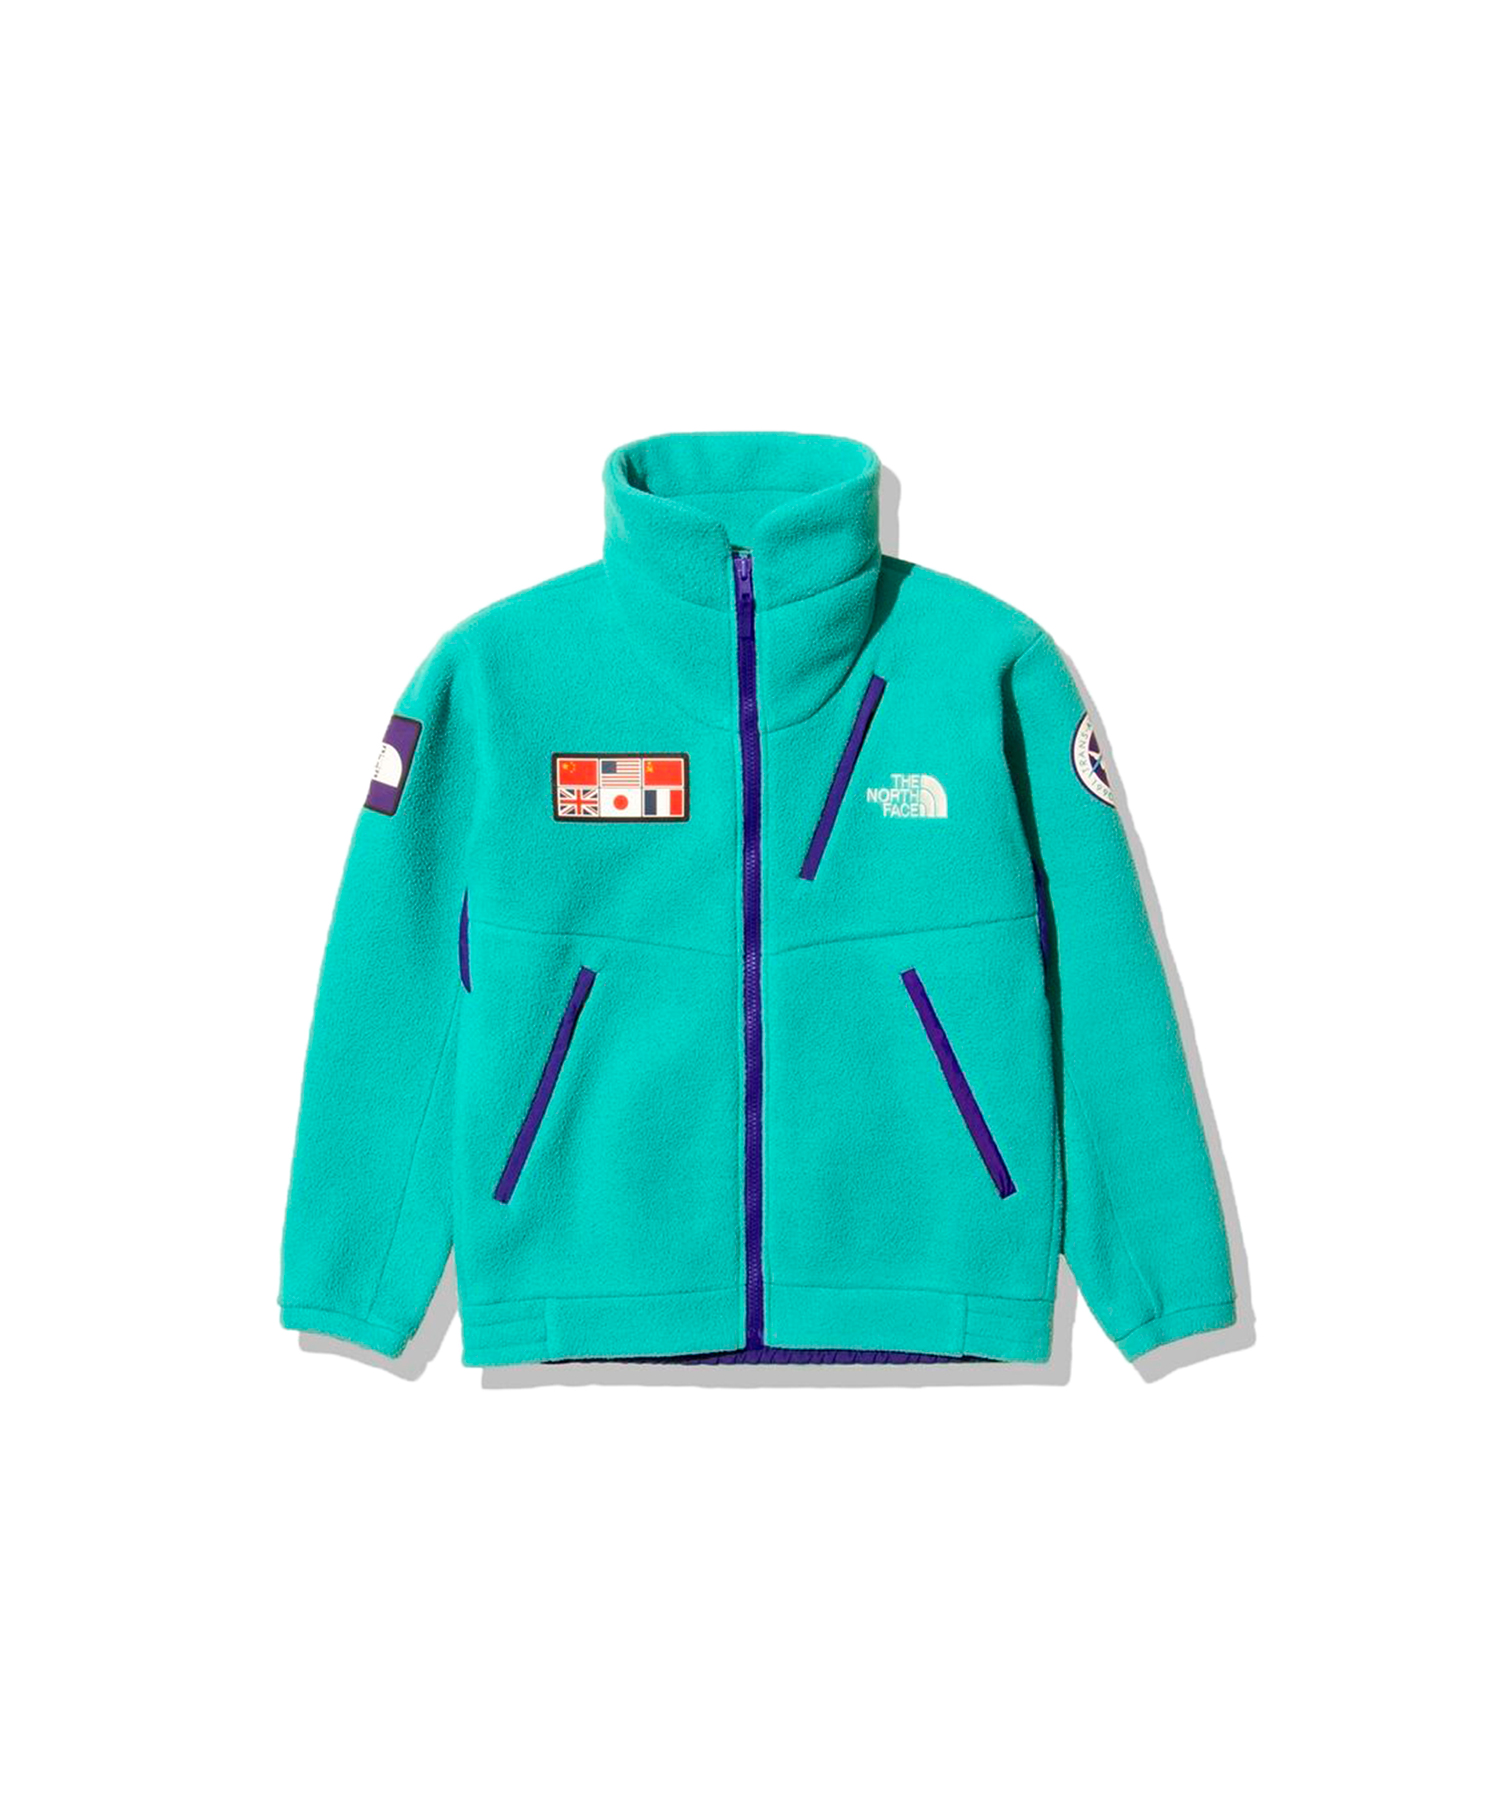 ノースフェイス Trans Antarctica fleece jacket